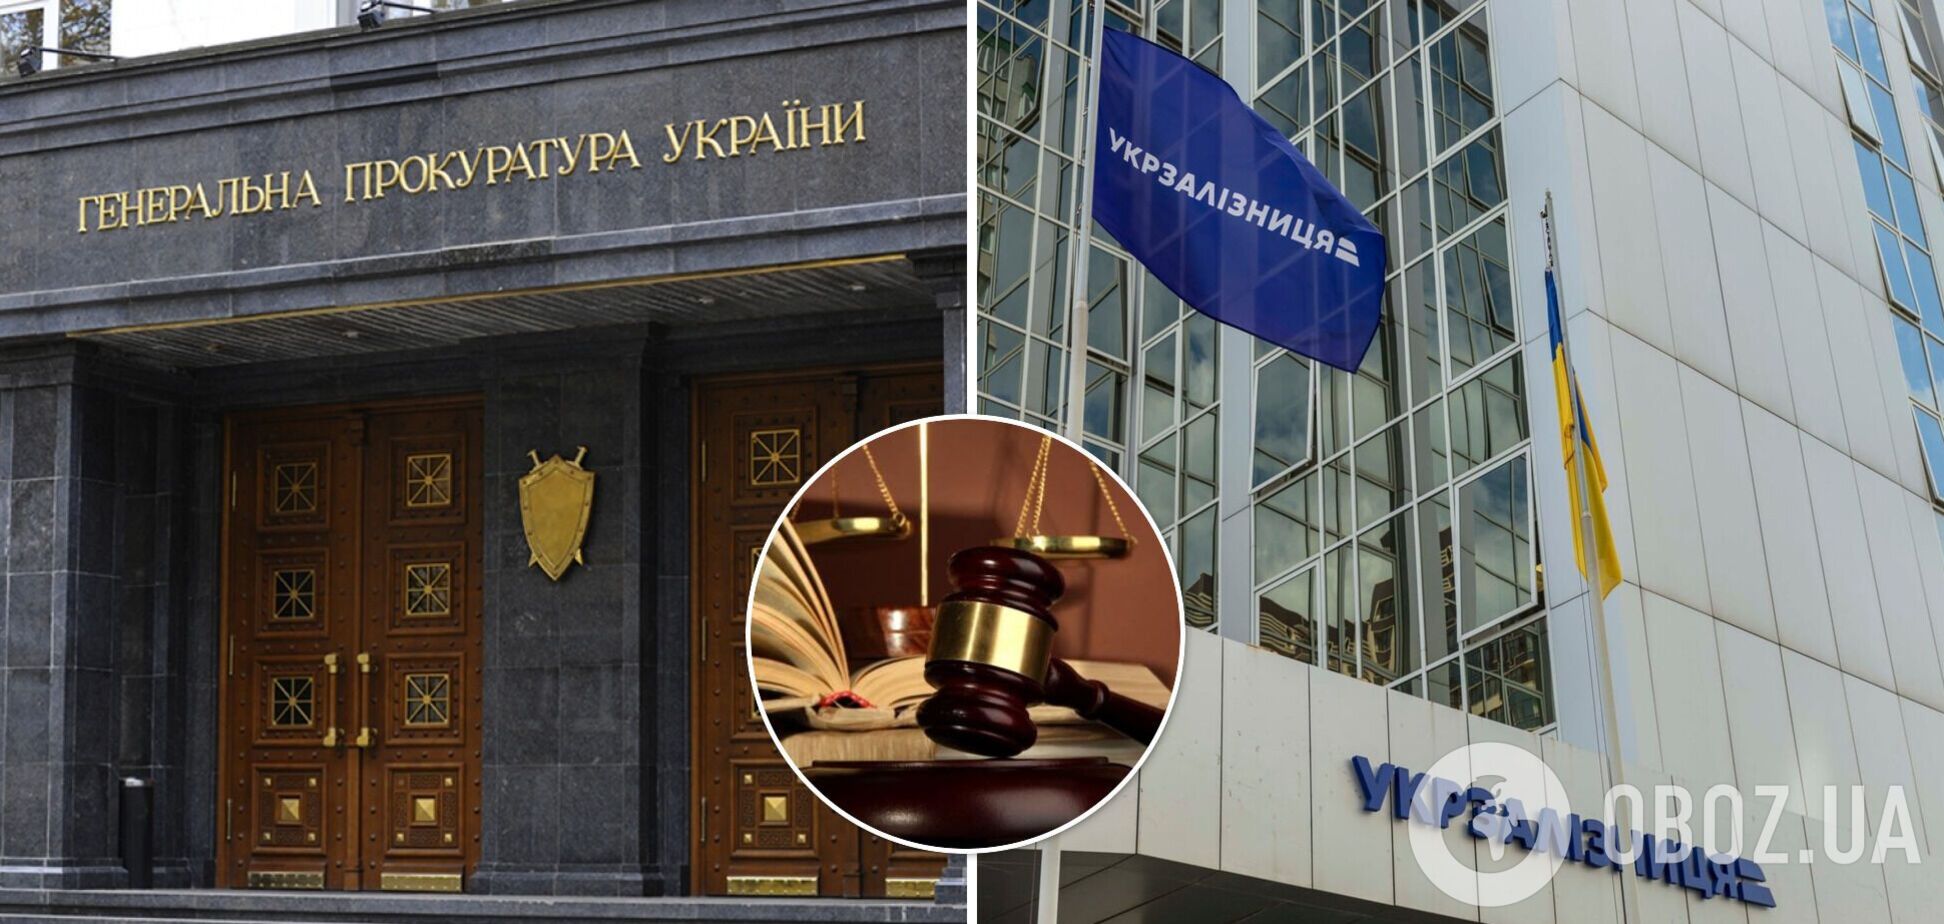 Прокуратура відкриває все більше кримінальних справ проти керівництва підприємств 'Укрзалізниці'